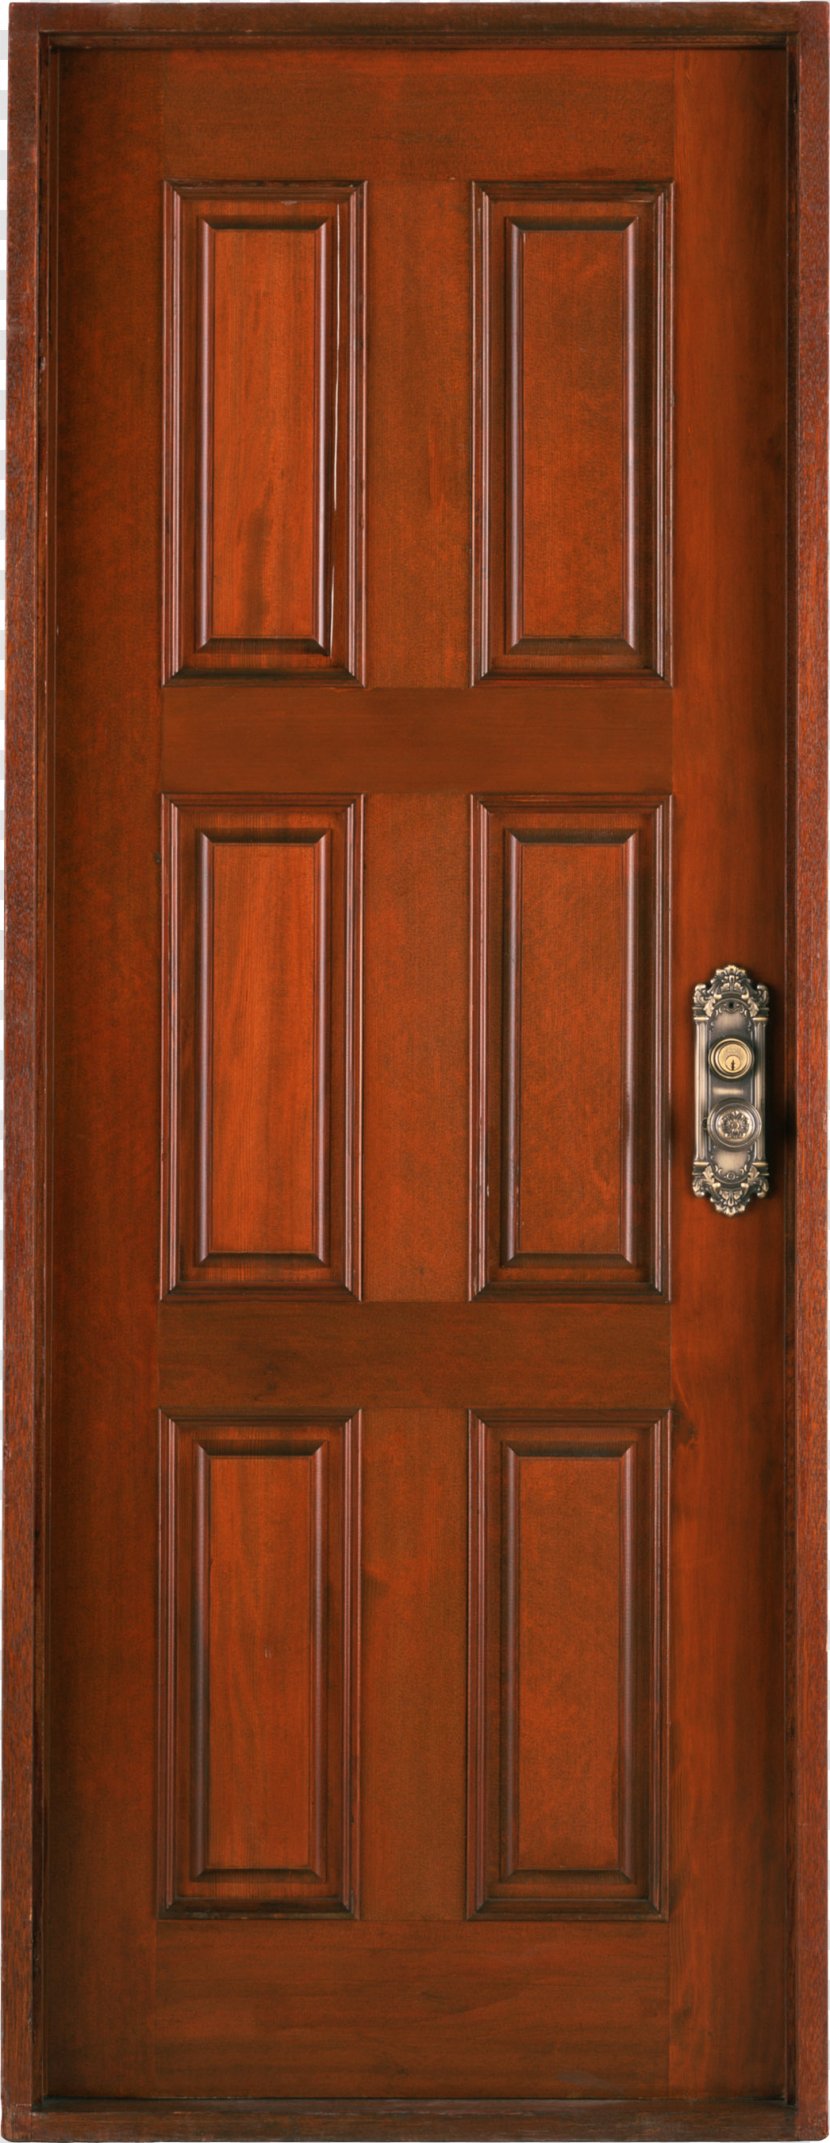 Door County, Wisconsin Window Gate Therma Tru Ltd - Cupboard - Wood Transparent PNG